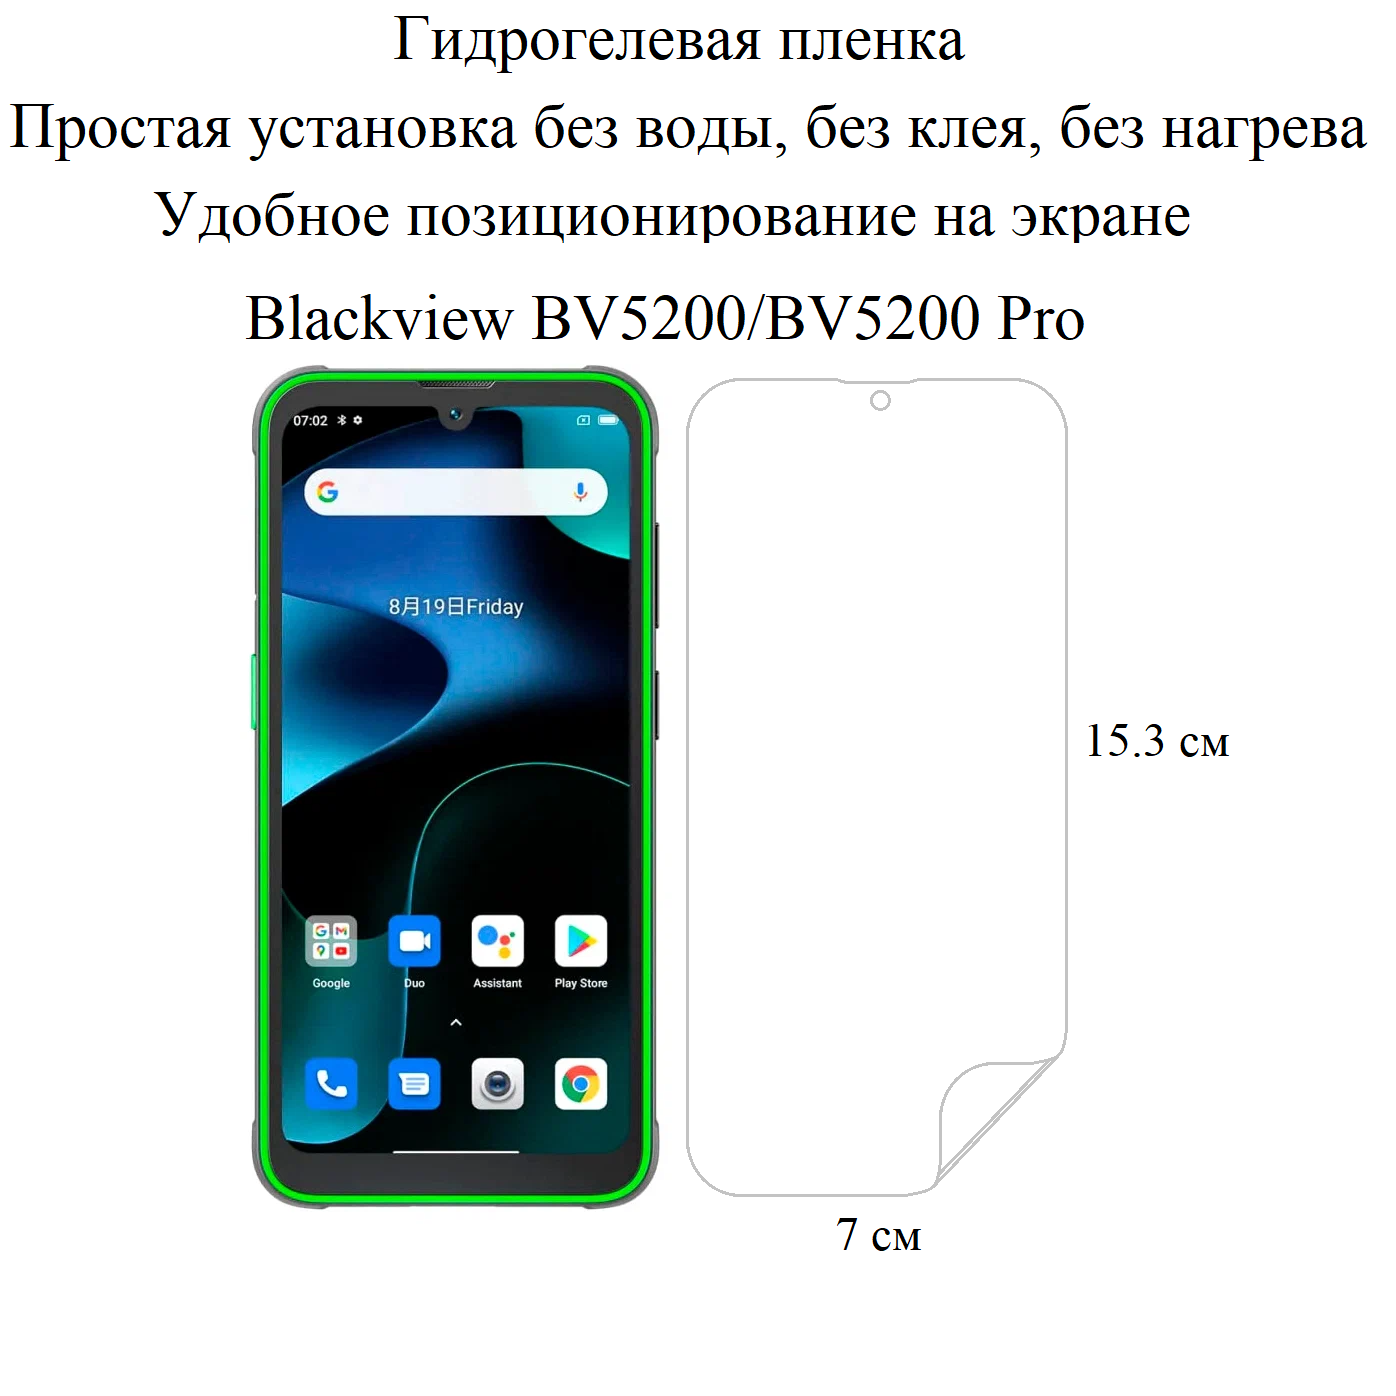 Матовая гидрогелевая пленка hoco. на экран смартфона Blackview BV5200/BV5200 Pro